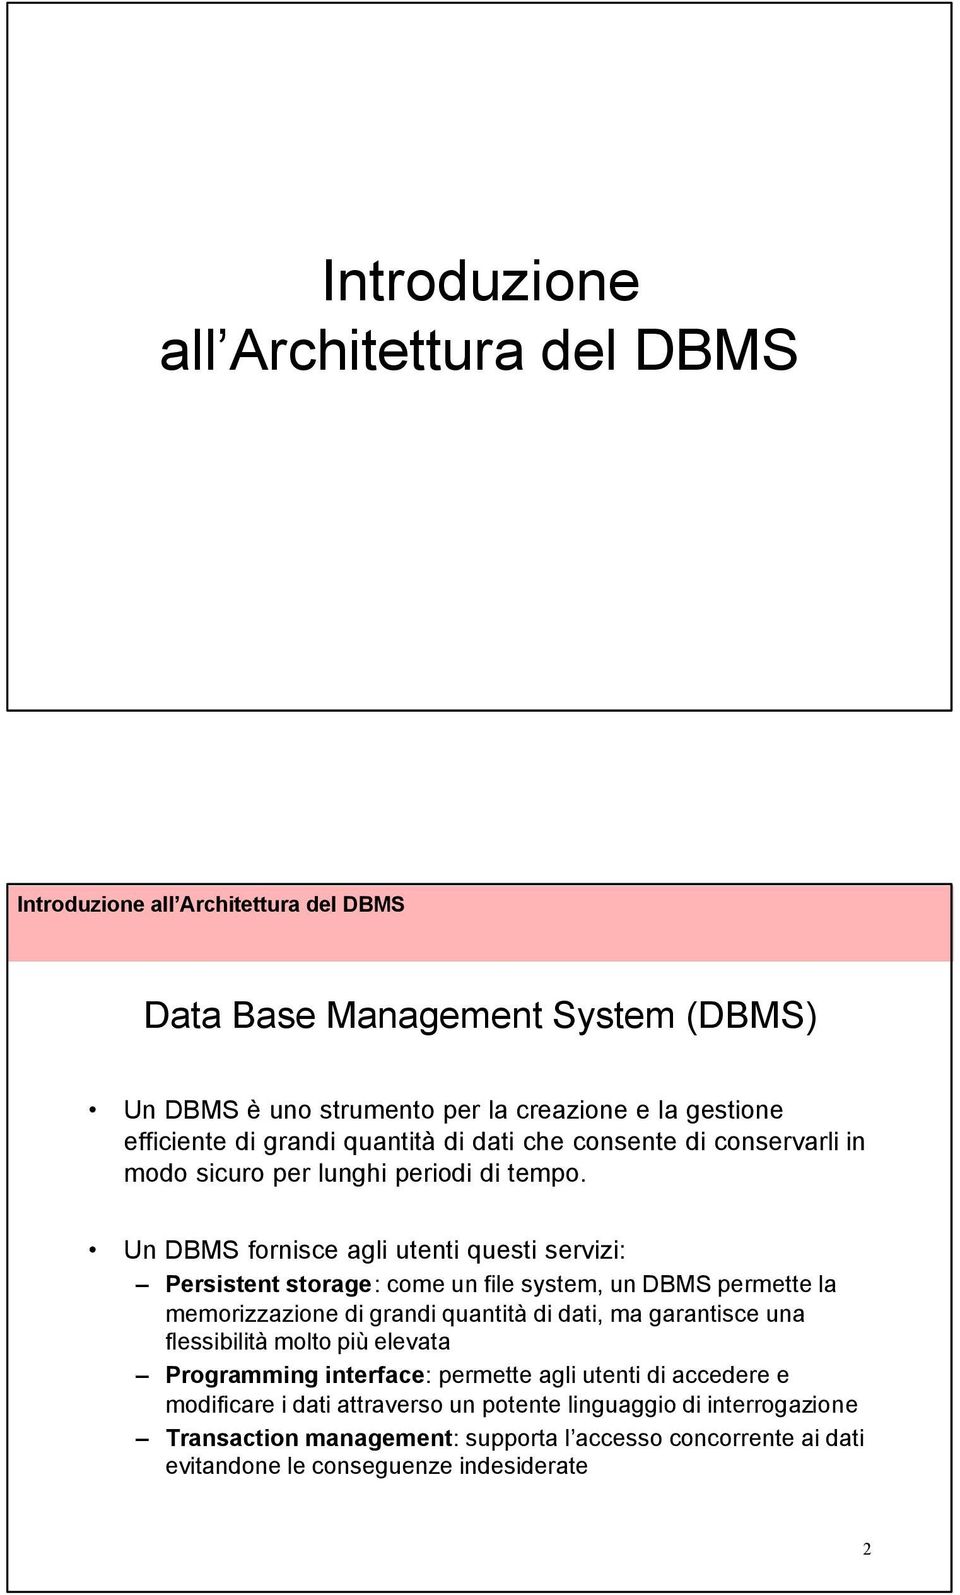 Un DBMS fornisce agli utenti questi servizi: Persistent storage: come un file system, un DBMS permette la memorizzazione di grandi quantità di dati, ma garantisce una